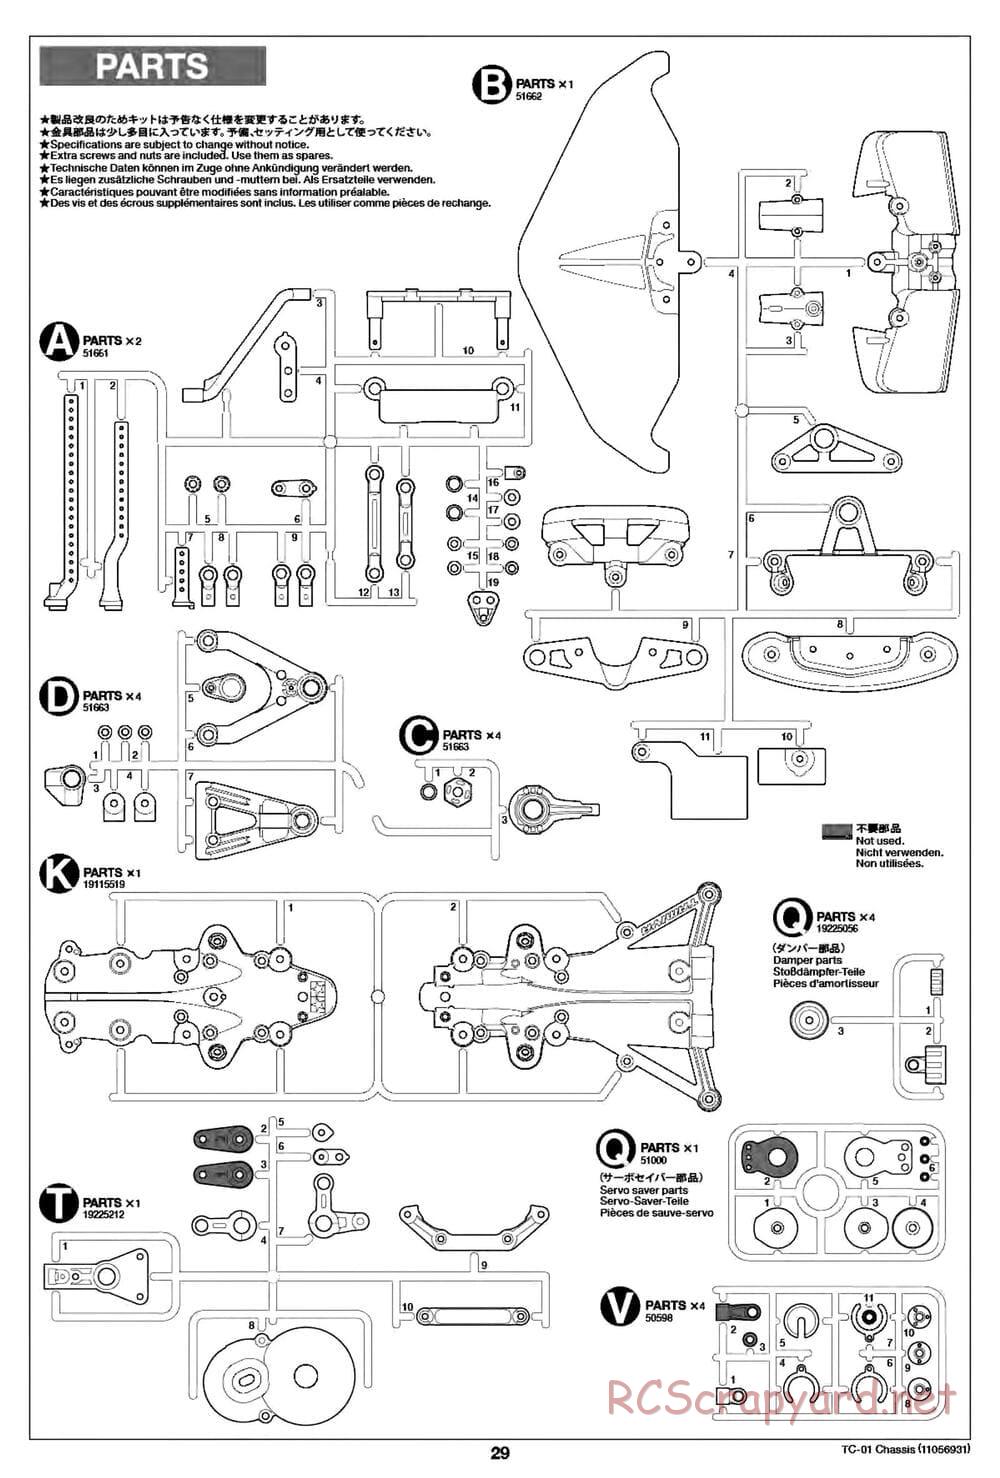 Tamiya - TC-01 Chassis - Manual - Page 29